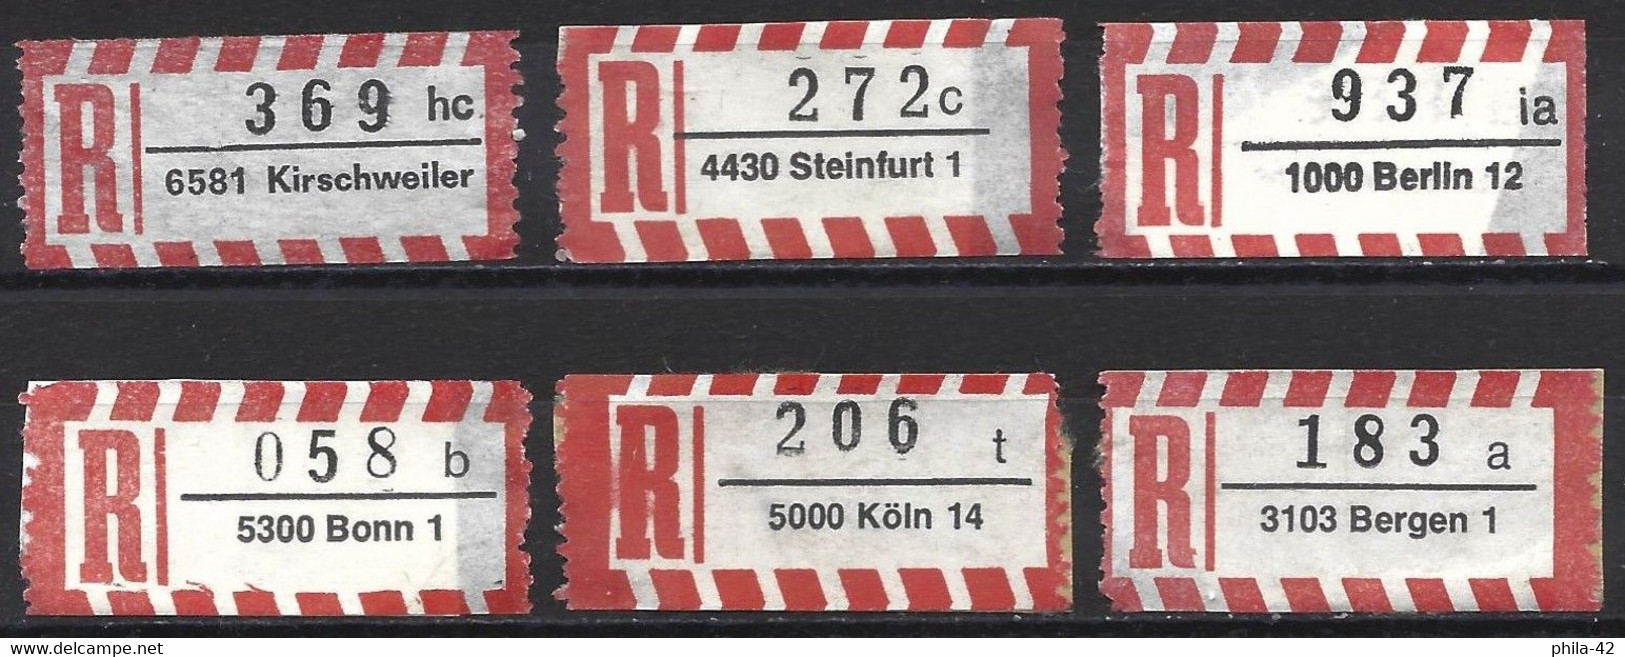 Germany FRG - Labels Registered Letter - Set 6 Labels - R- & V- Vignette